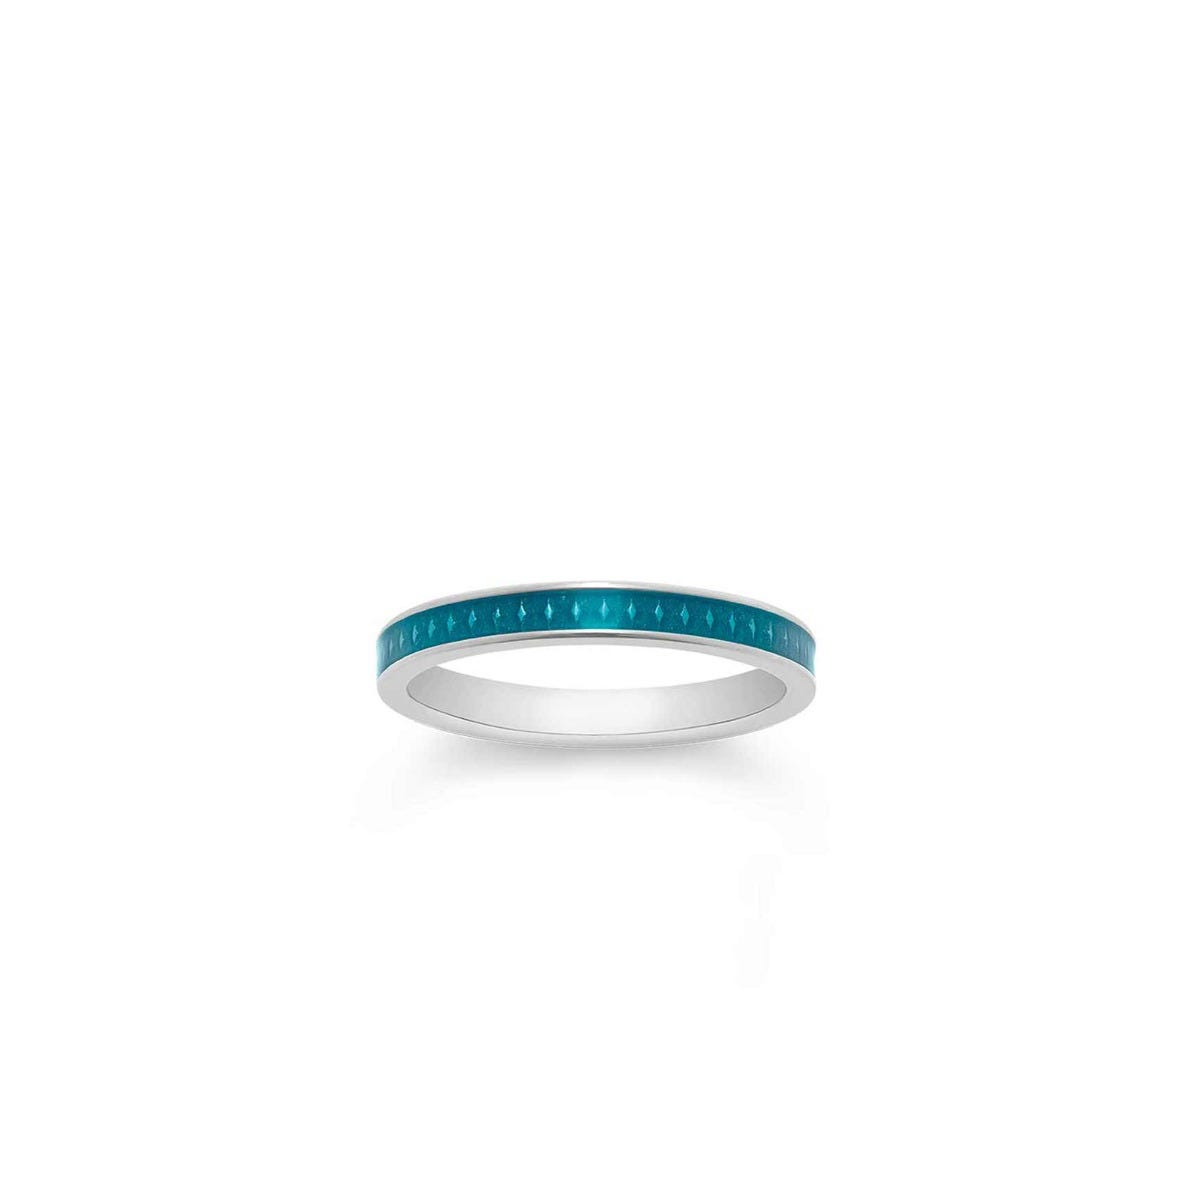 167 Enamel Ring in White Gold 3mm, Light Blue